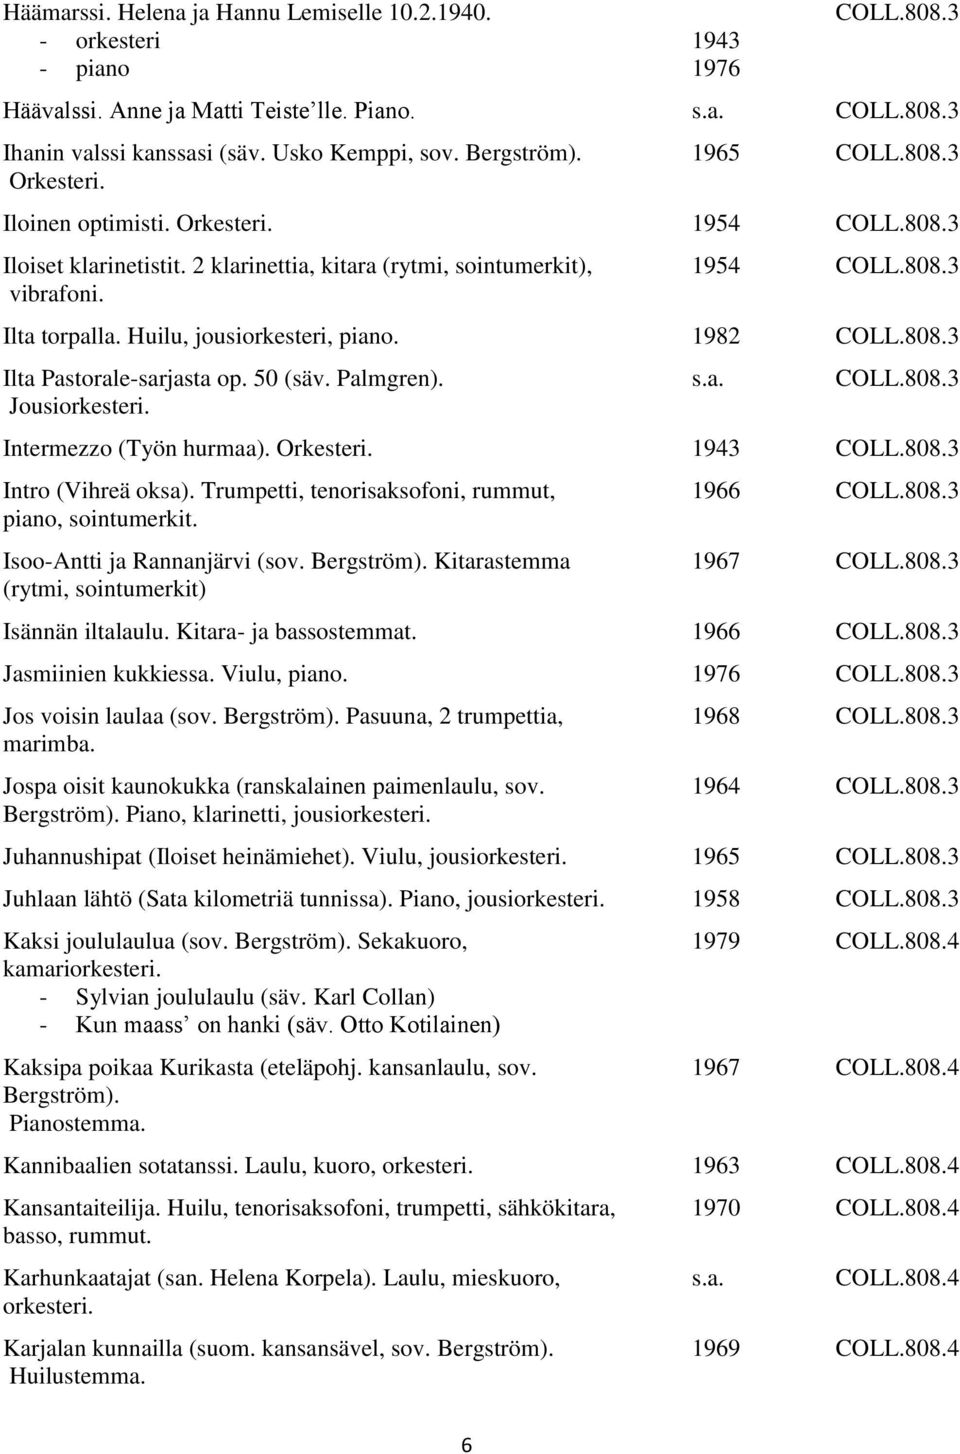 Huilu, jousi, piano. 1982 COLL.808.3 Ilta Pastorale-sarjasta op. 50 (säv. Palmgren). Jousi. COLL.808.3 Intermezzo (Työn hurmaa). Orkesteri. 1943 COLL.808.3 Intro (Vihreä oksa).